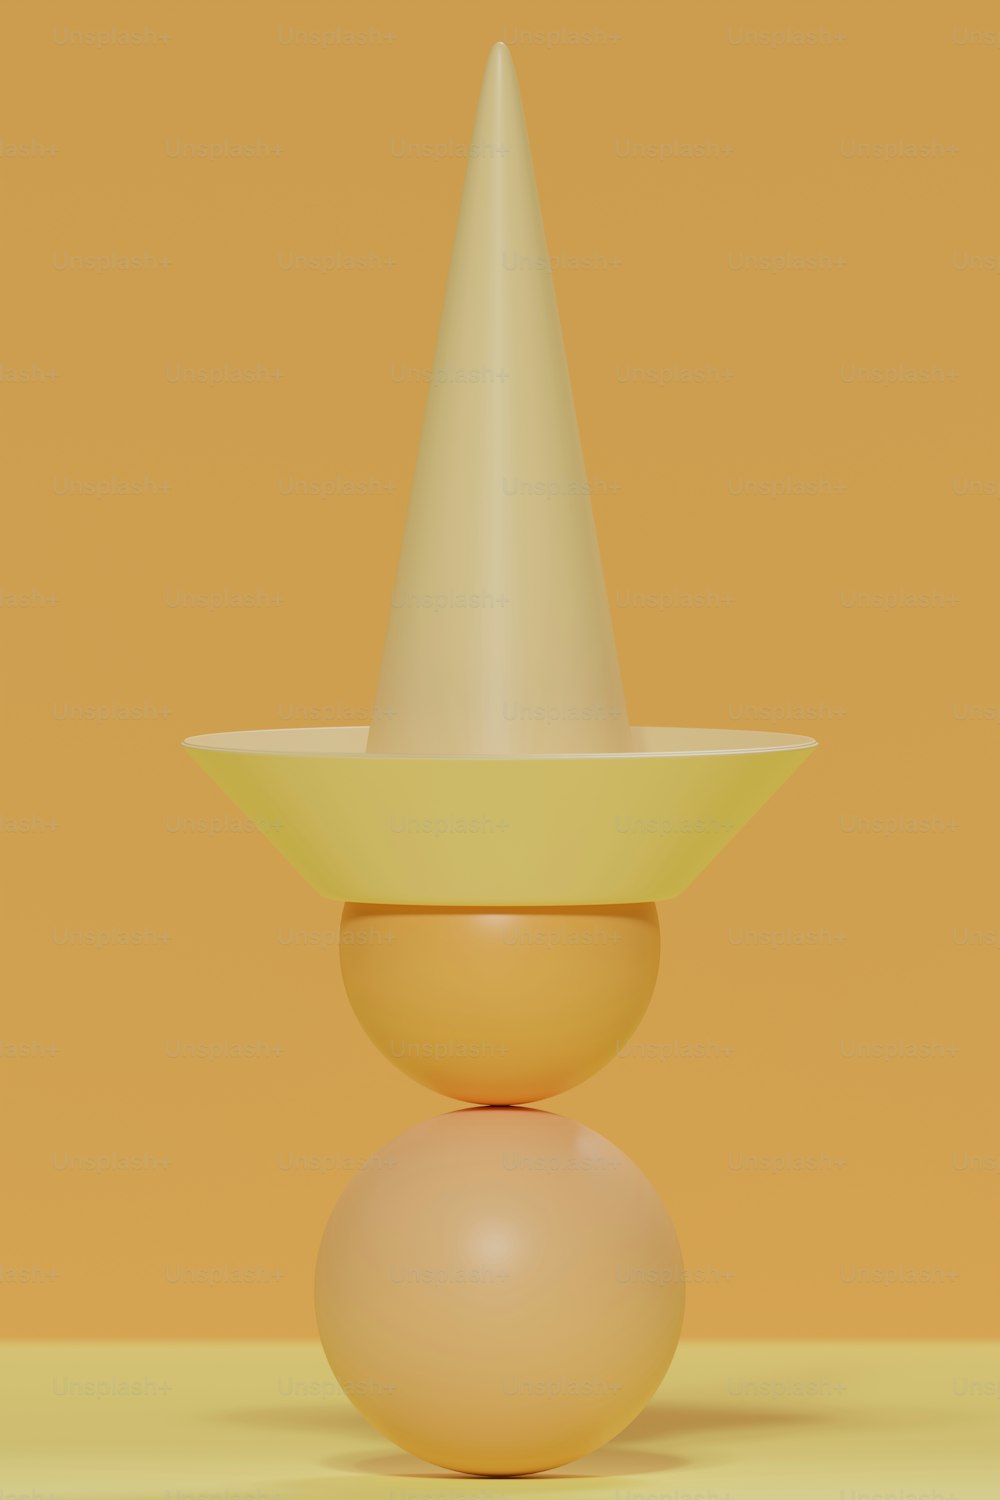 un objet jaune avec un cône blanc sur le dessus